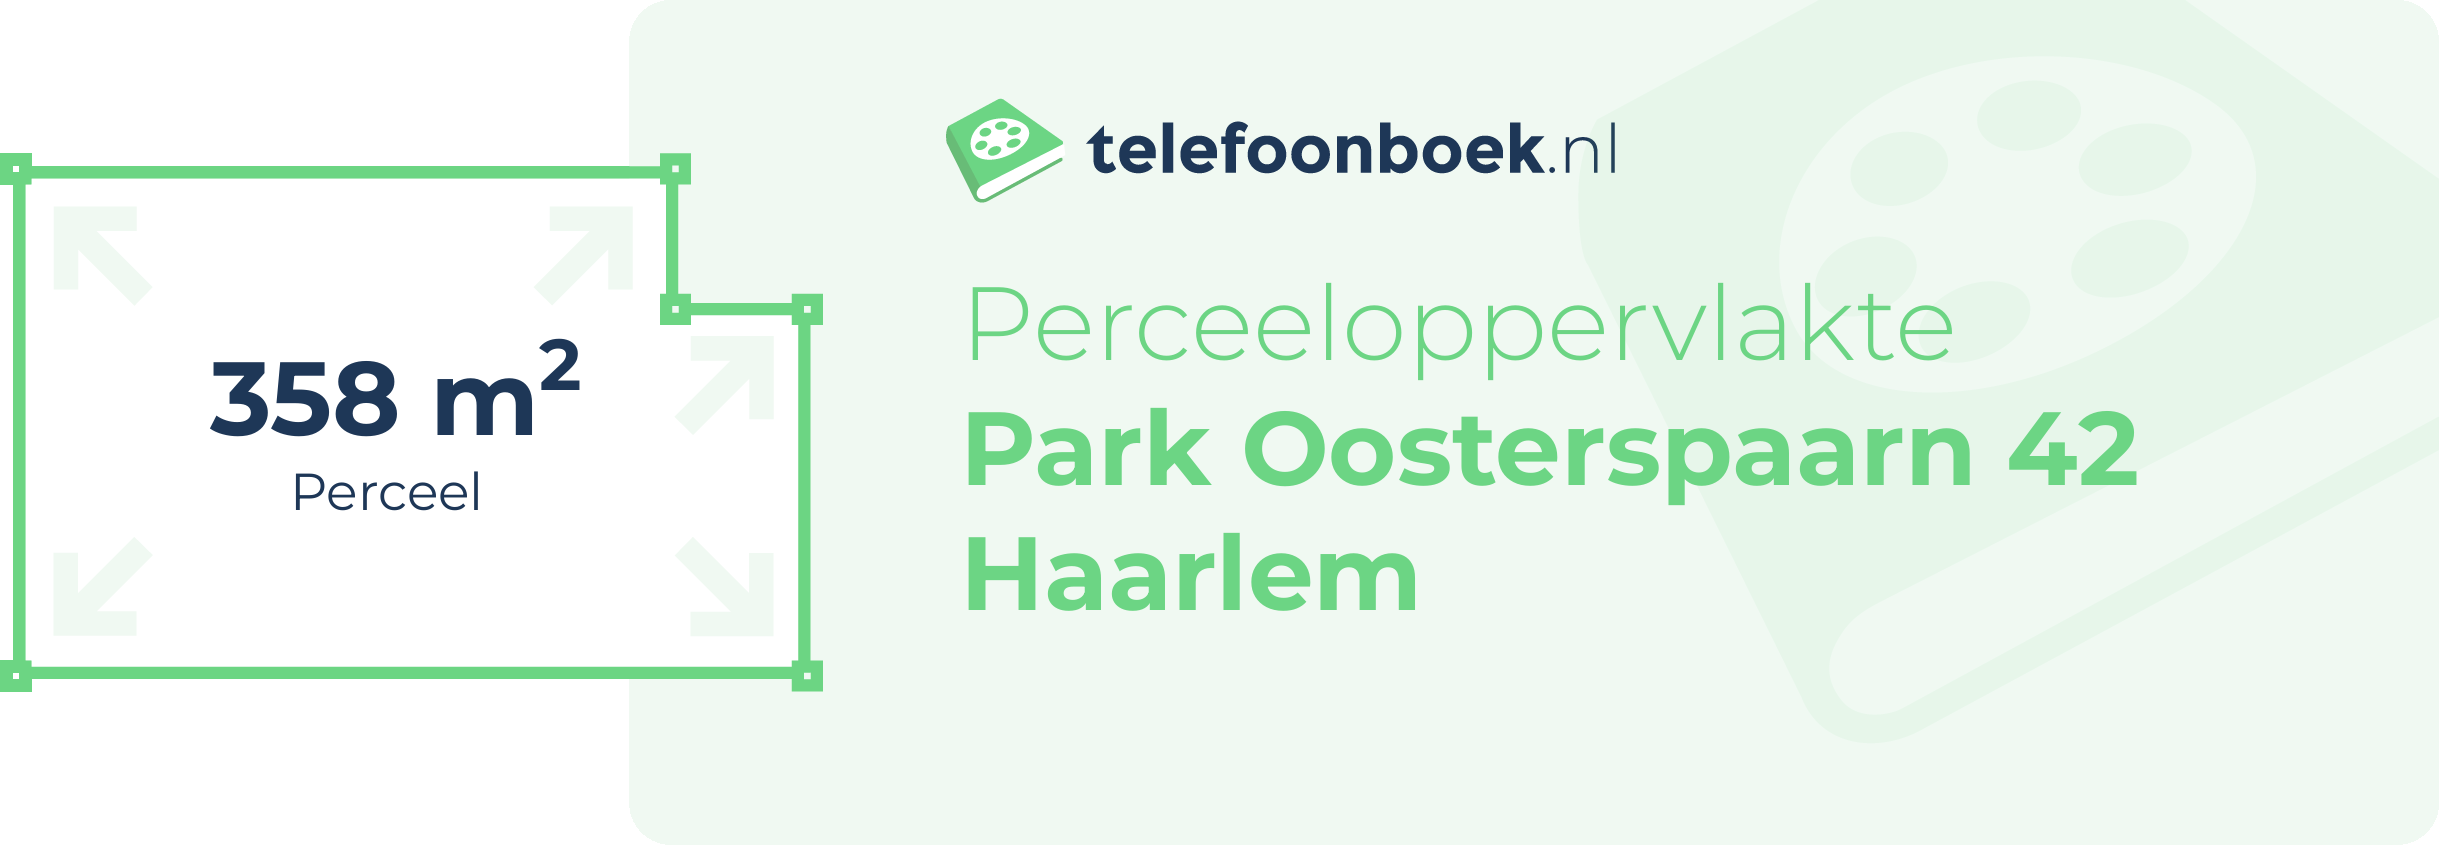 Perceeloppervlakte Park Oosterspaarn 42 Haarlem